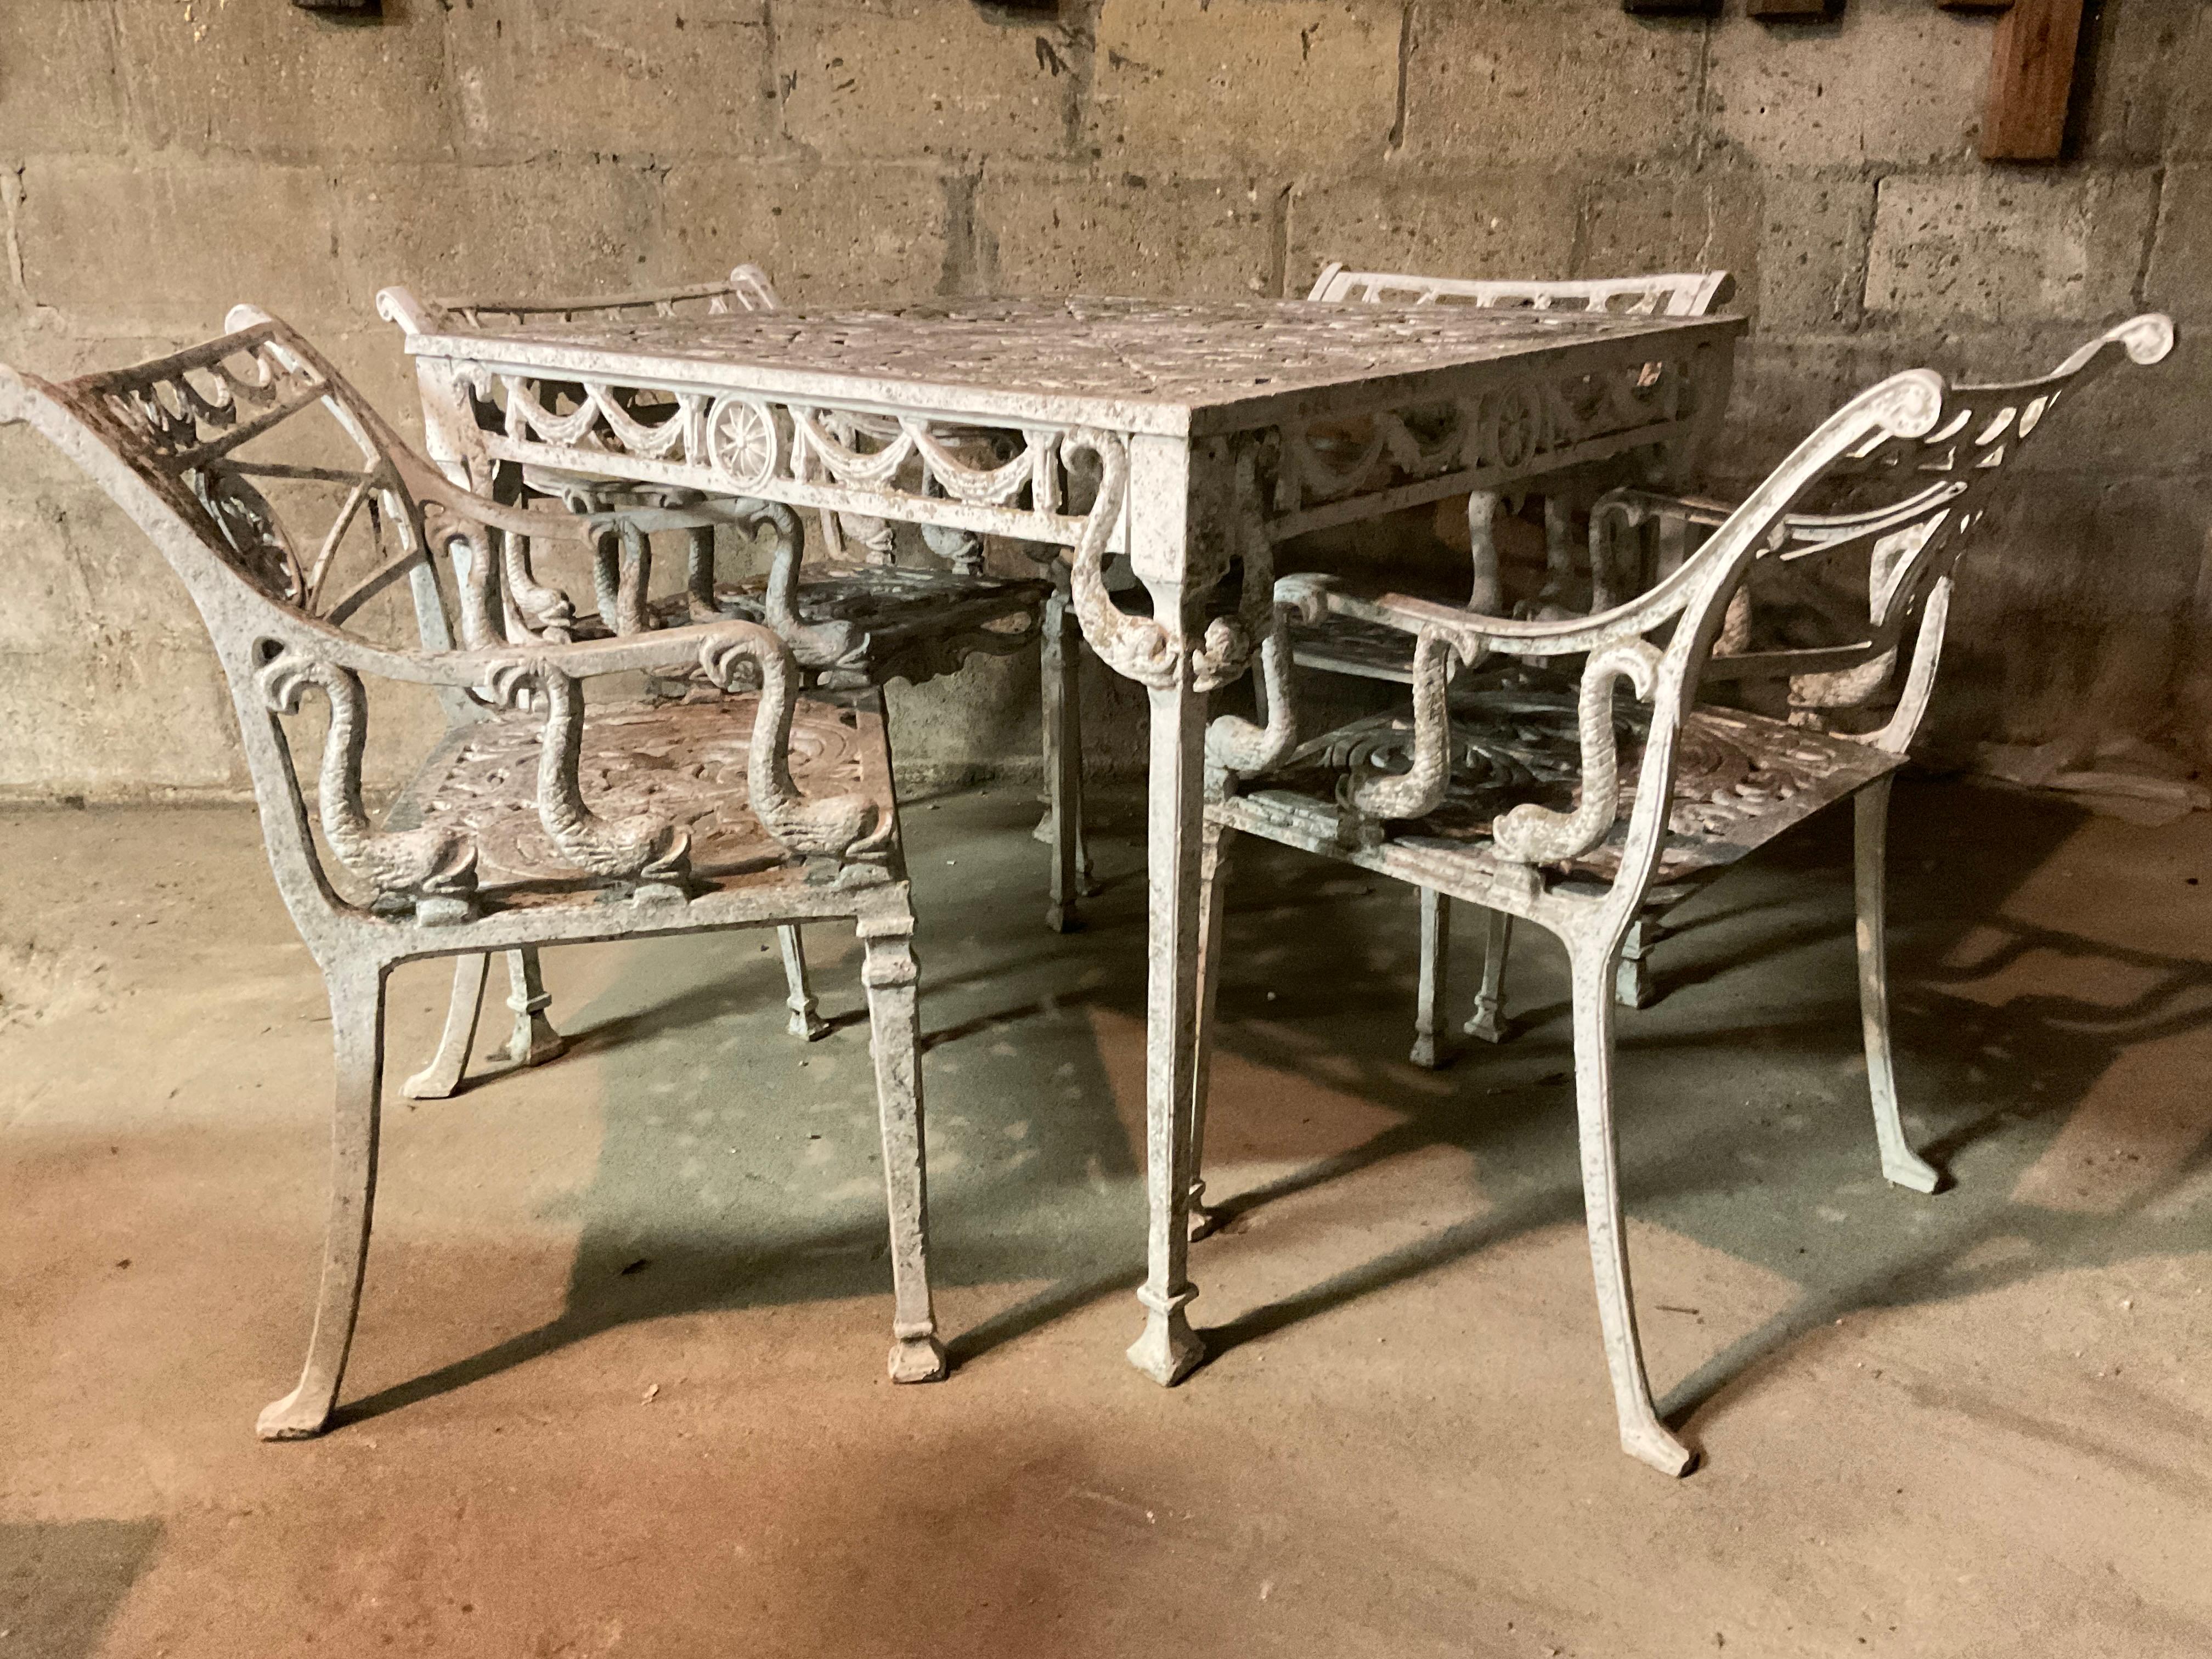  1960er Jahre Dolphin Outdoor-Set. 4 Stühle und Tisch. Schweres Aluminium. Muss gereinigt und gestrichen werden.
Ein Stuhl hat einen Knick im Bein, wie auf dem letzten Bild zu sehen ist.